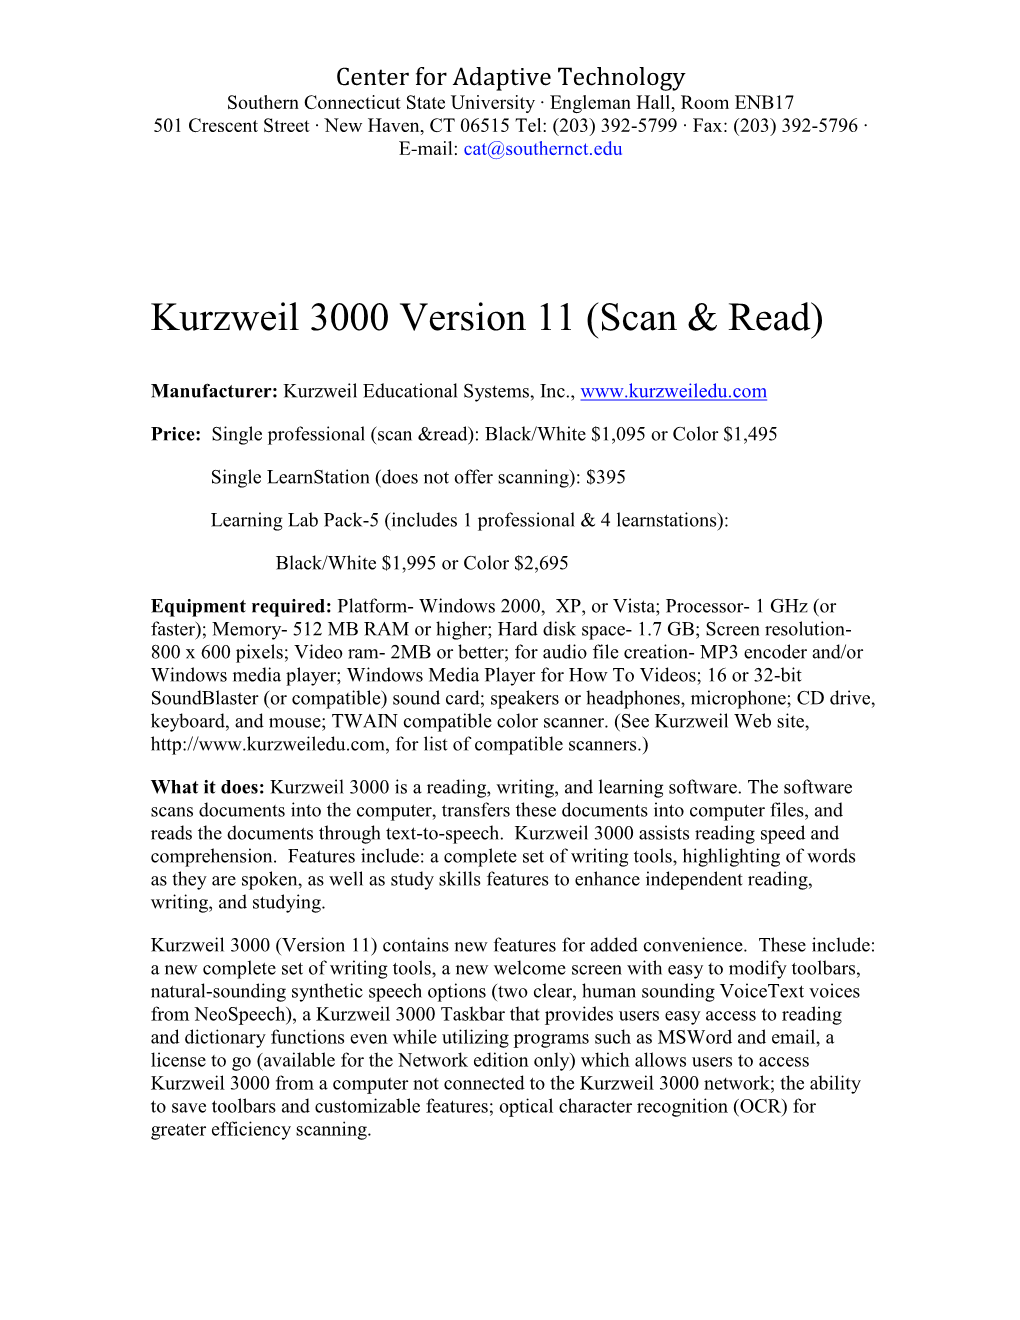 Kurzweil 3000 Version 10 (Scan & Read)